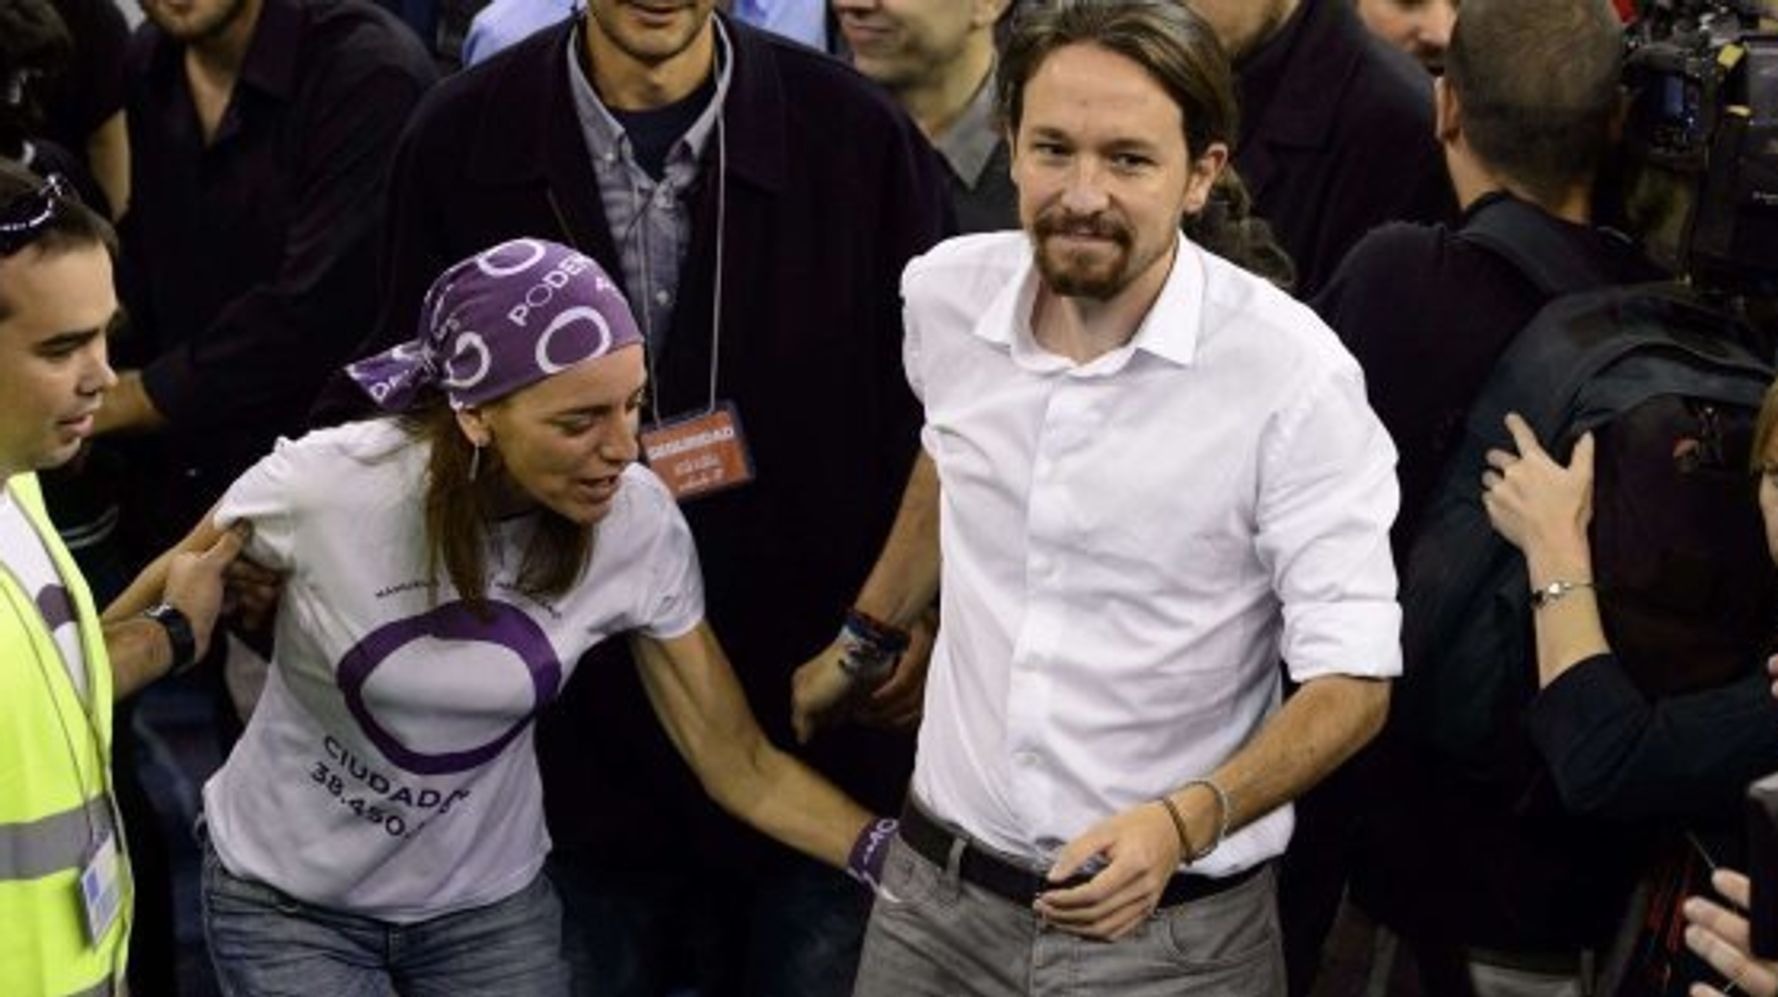 Las Imágenes De La Asamblea Ciudadana De Podemos Fotos El Huffpost Política 6619